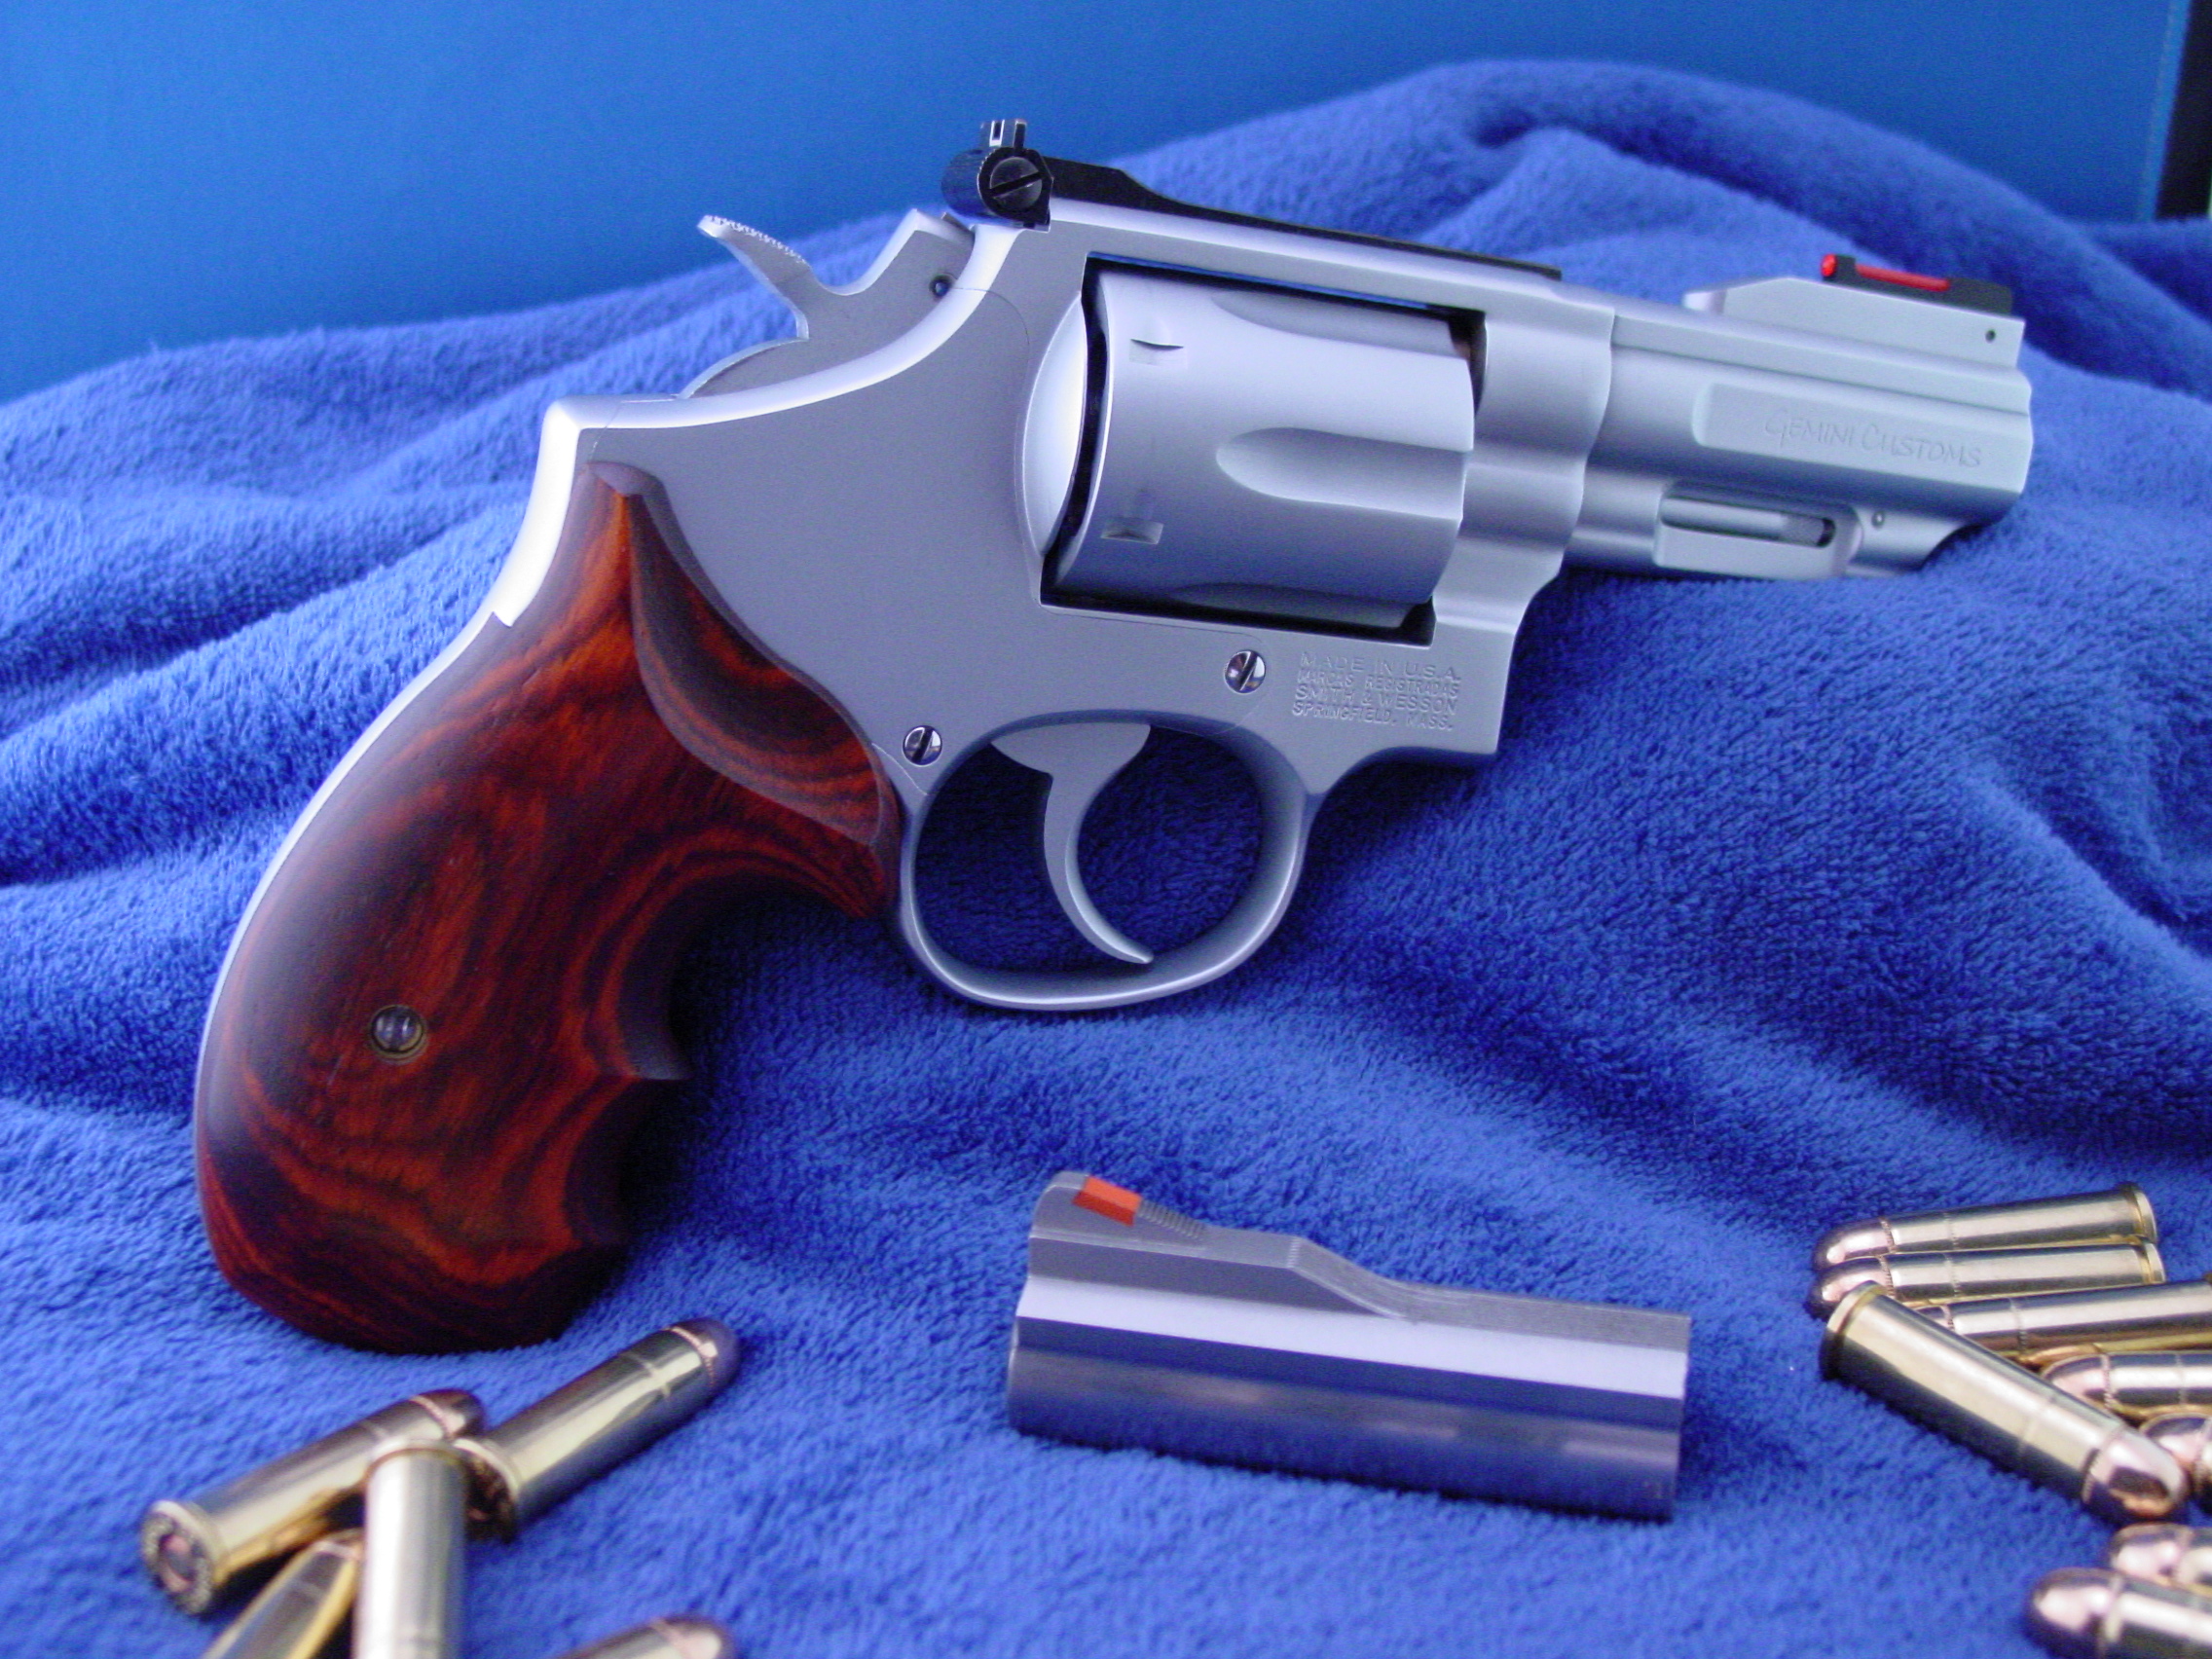 guns, revolvers, weapons - desktop wallpaper